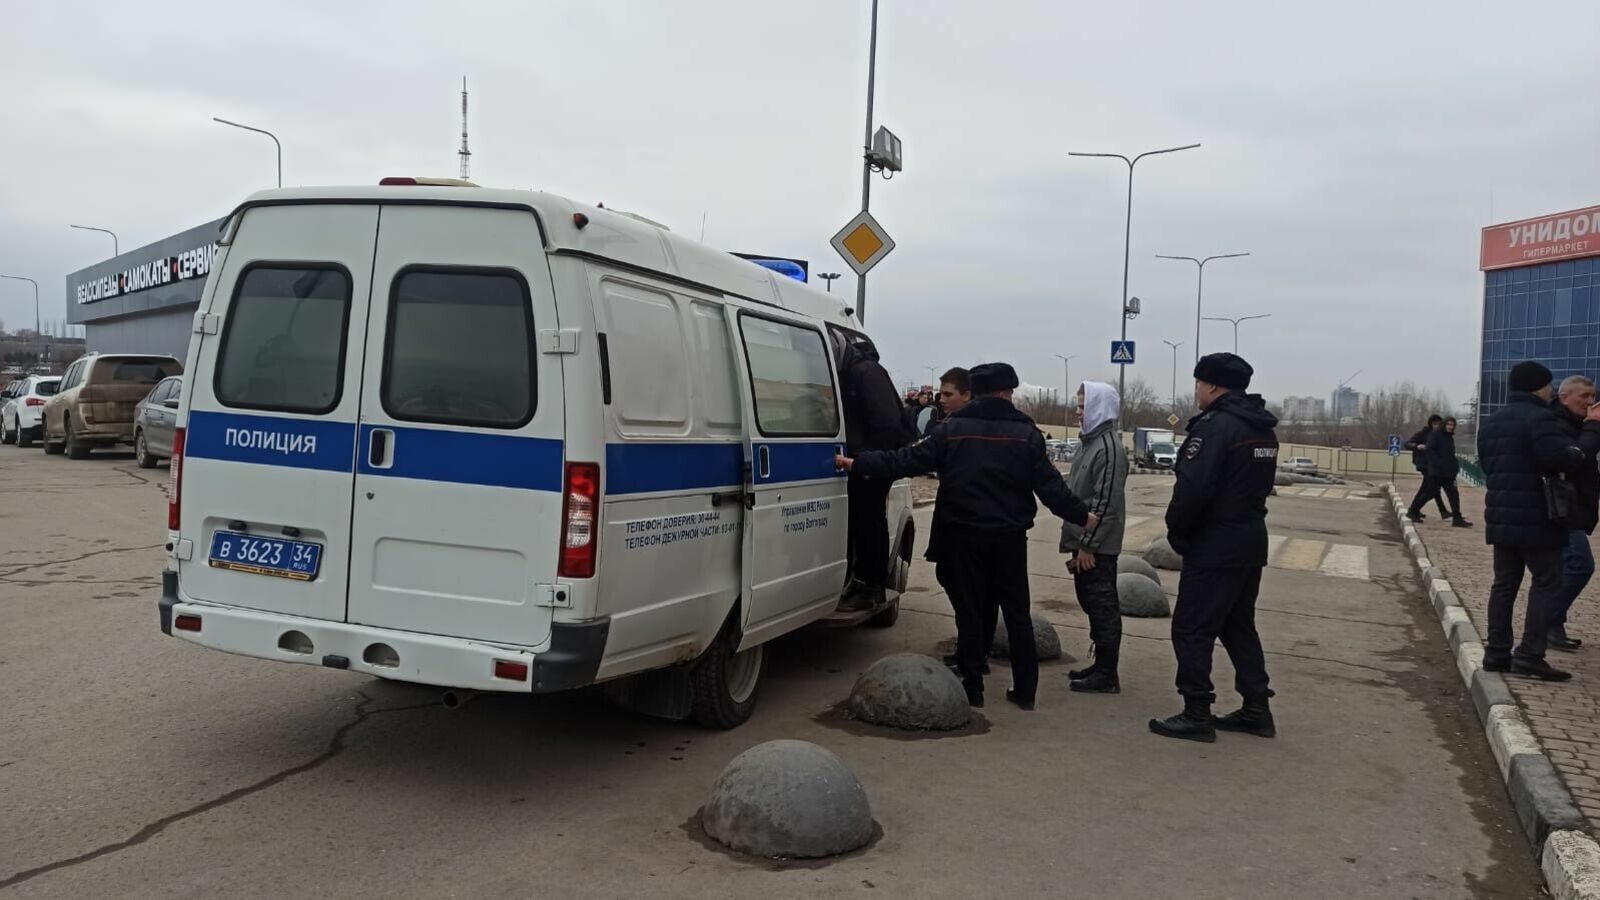 ЧВК «Редан» в Волгограде: первая сходка с автозаками, задержаниями и без драк